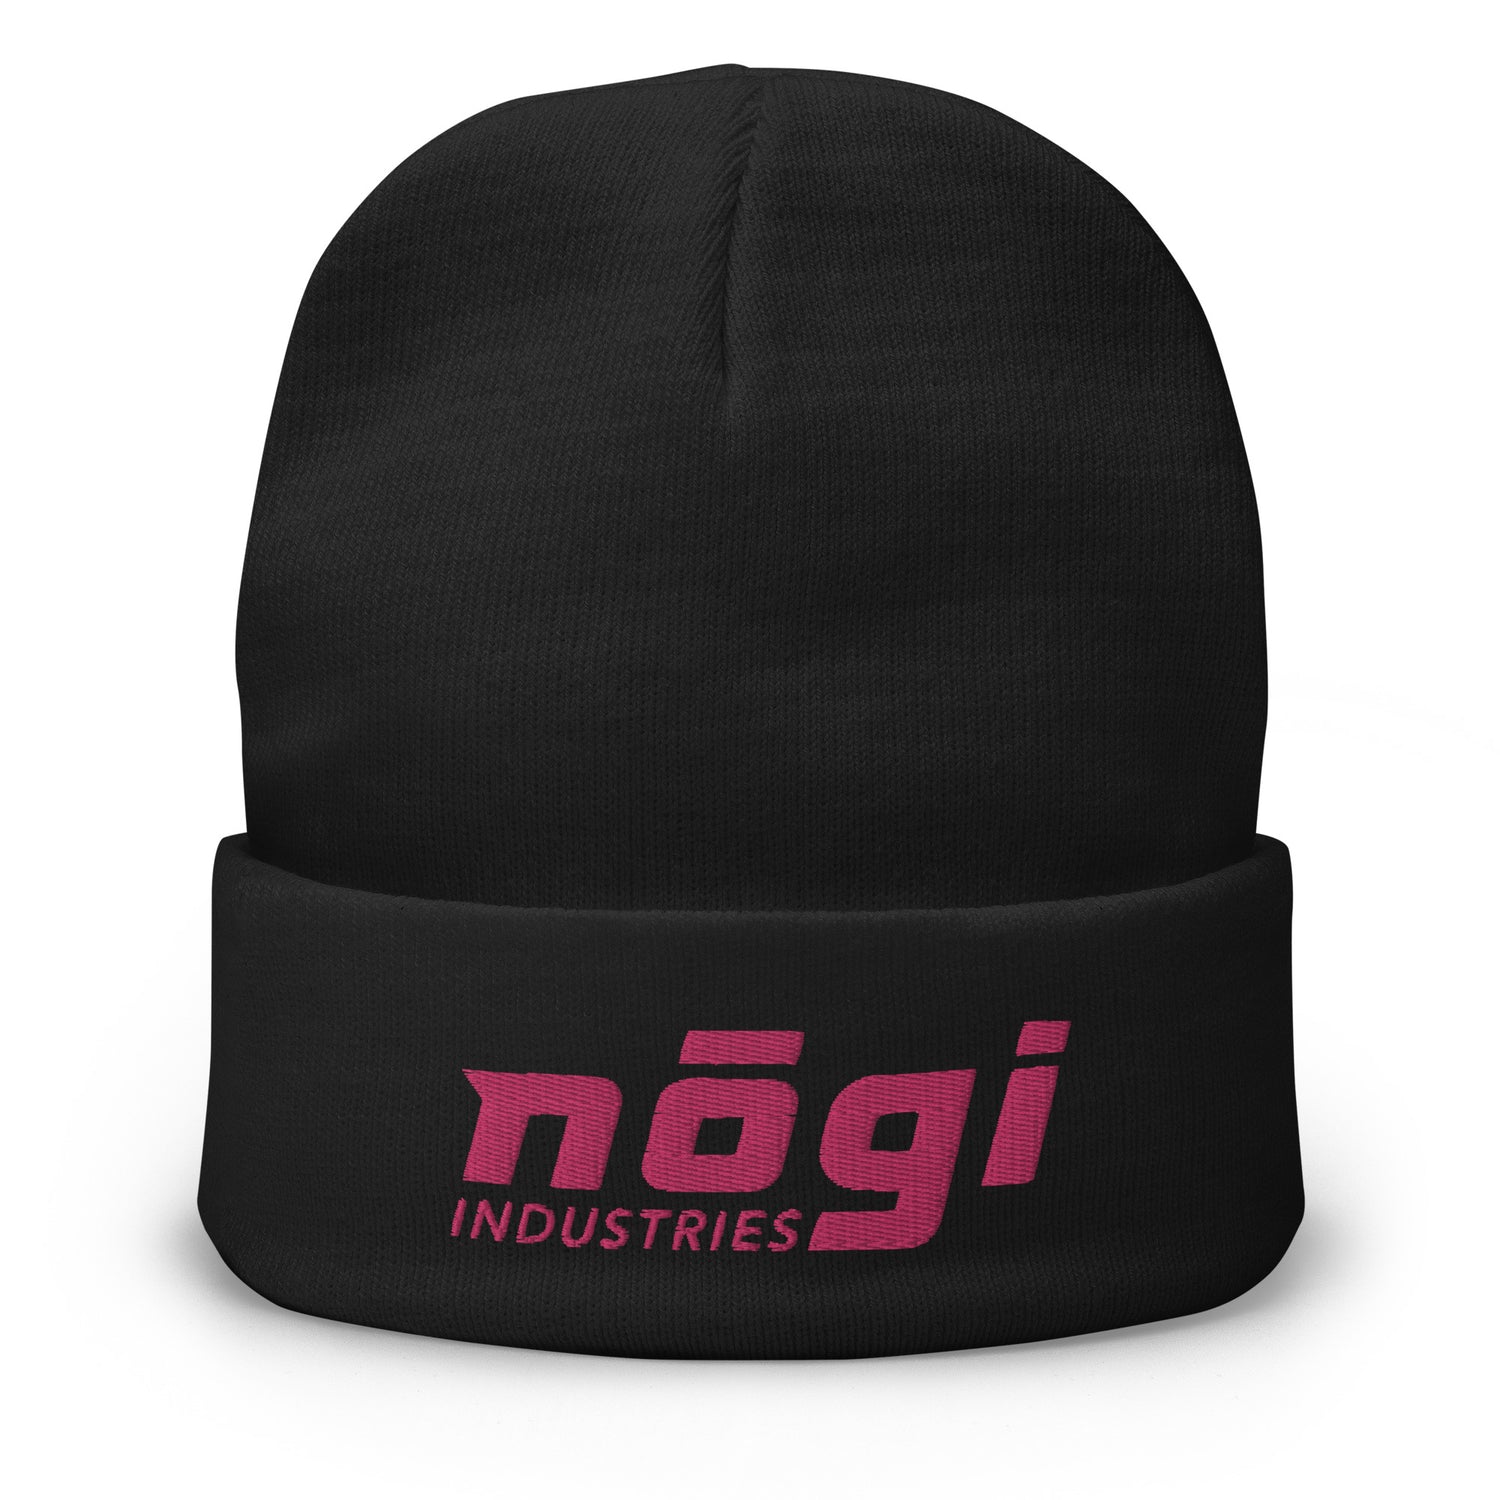 Nogi Industries のパフロゴ付き刺繍ビーニー (ブラック & ピンク)